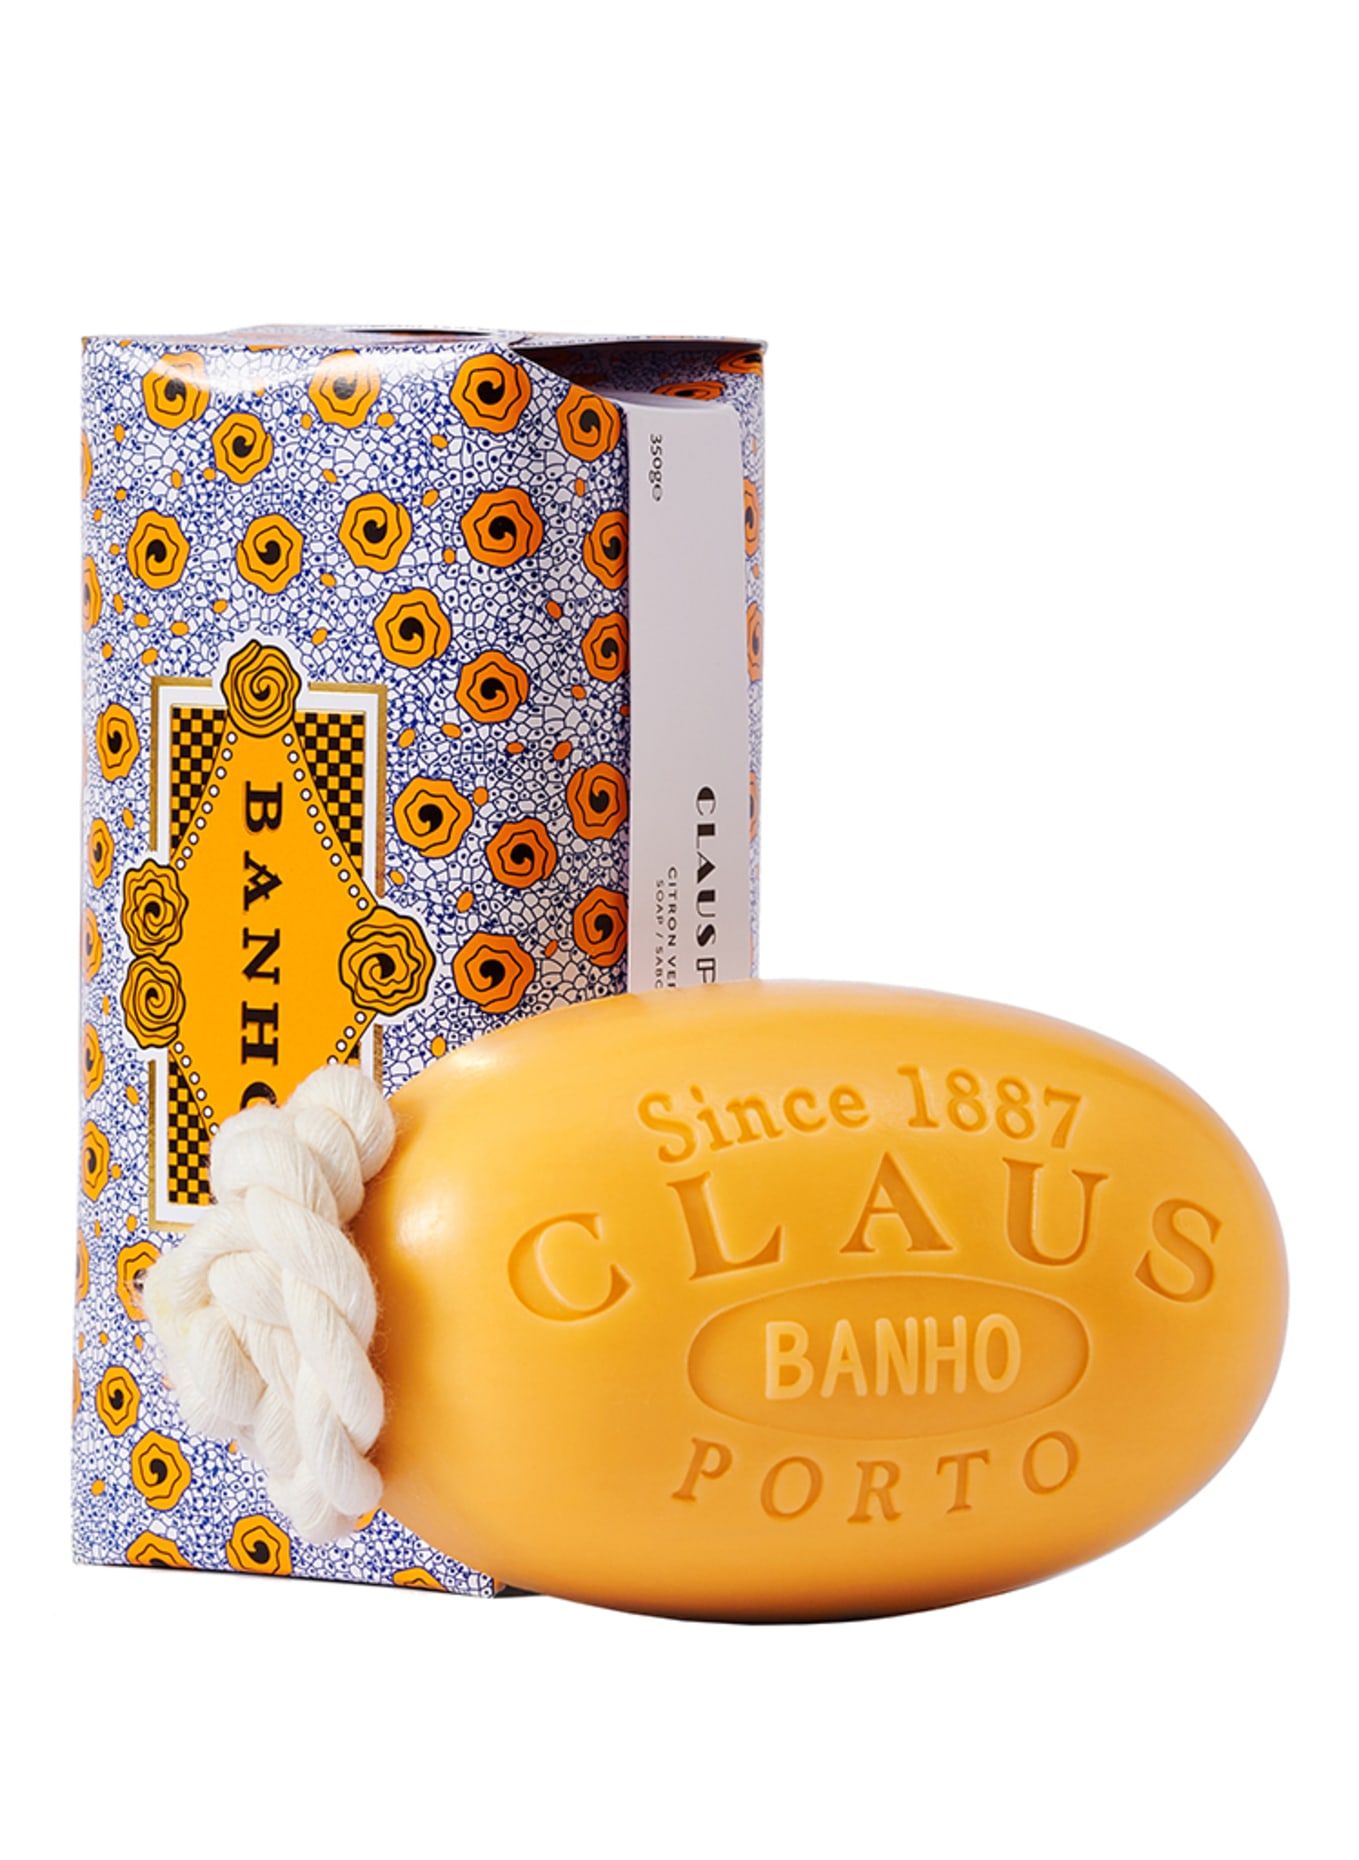 CLAUS PORTO BANHO SOAP ON A ROAP (Obrázek 1)